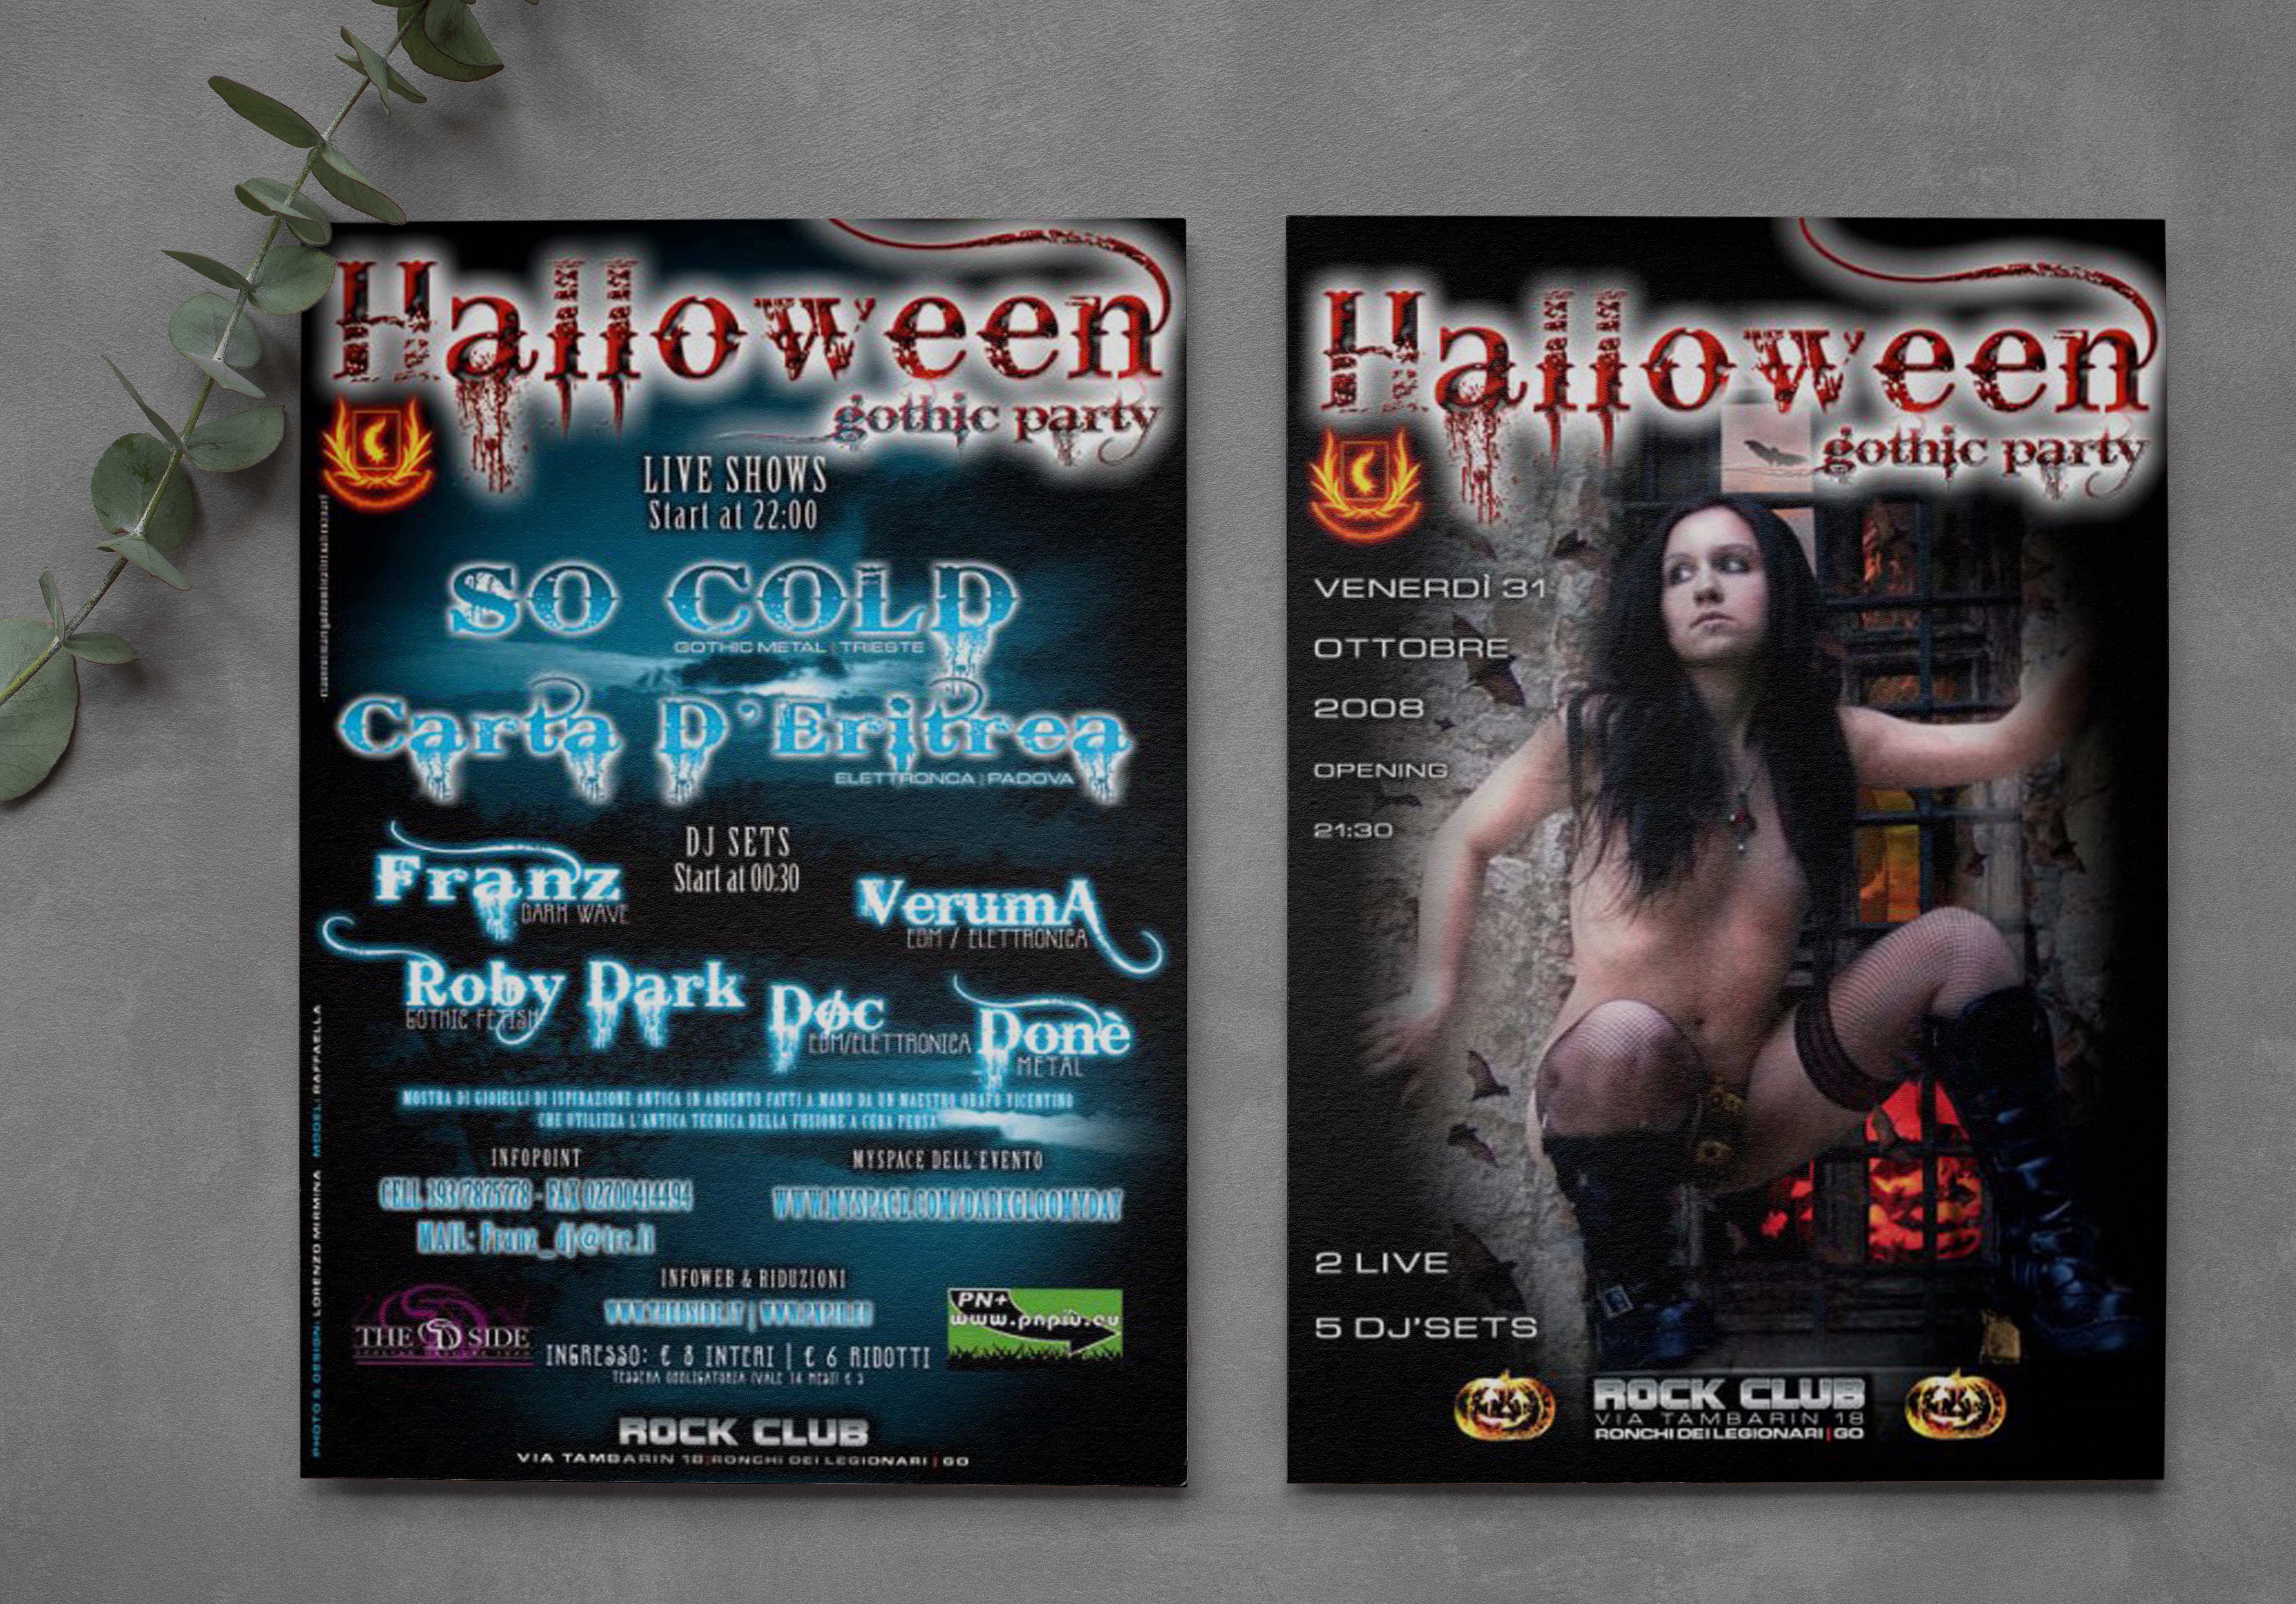 Flyer Halloween gothic party 2008. Foto Lorenzo Mirmina. Cm10x15.